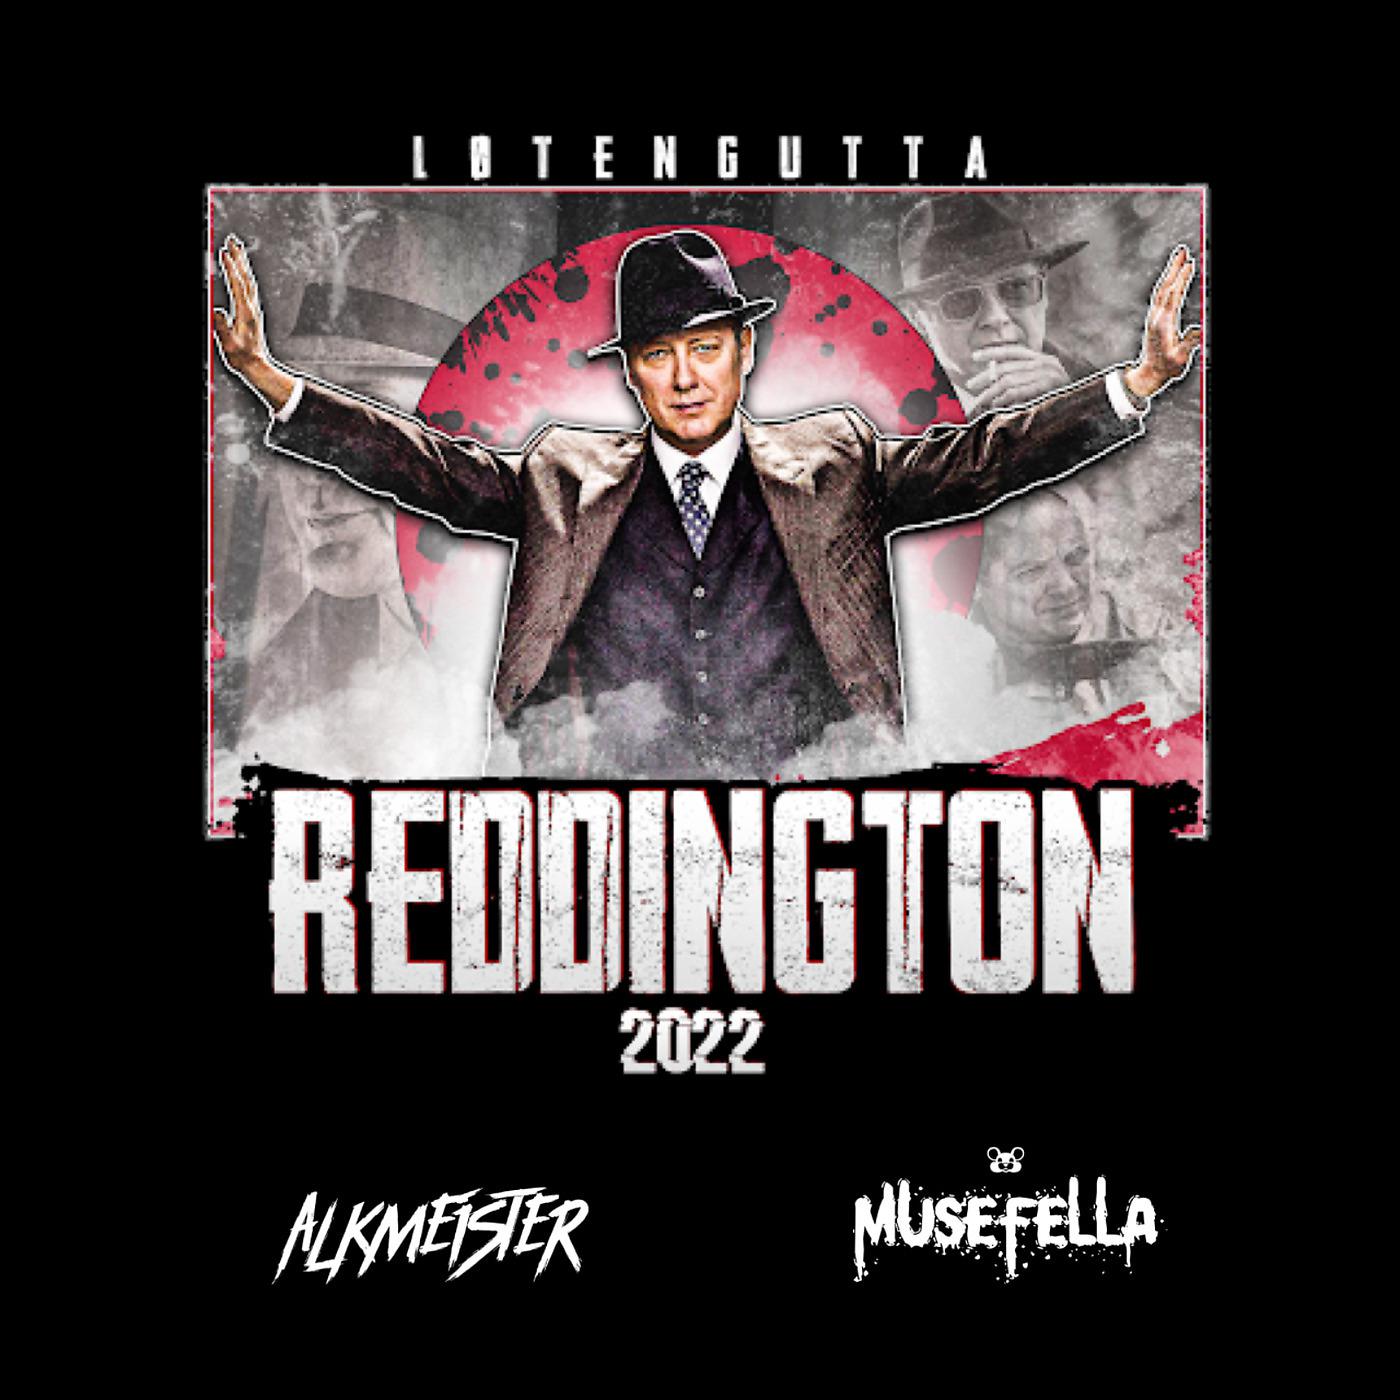 Постер альбома Reddington 2022 (Løtengutta)